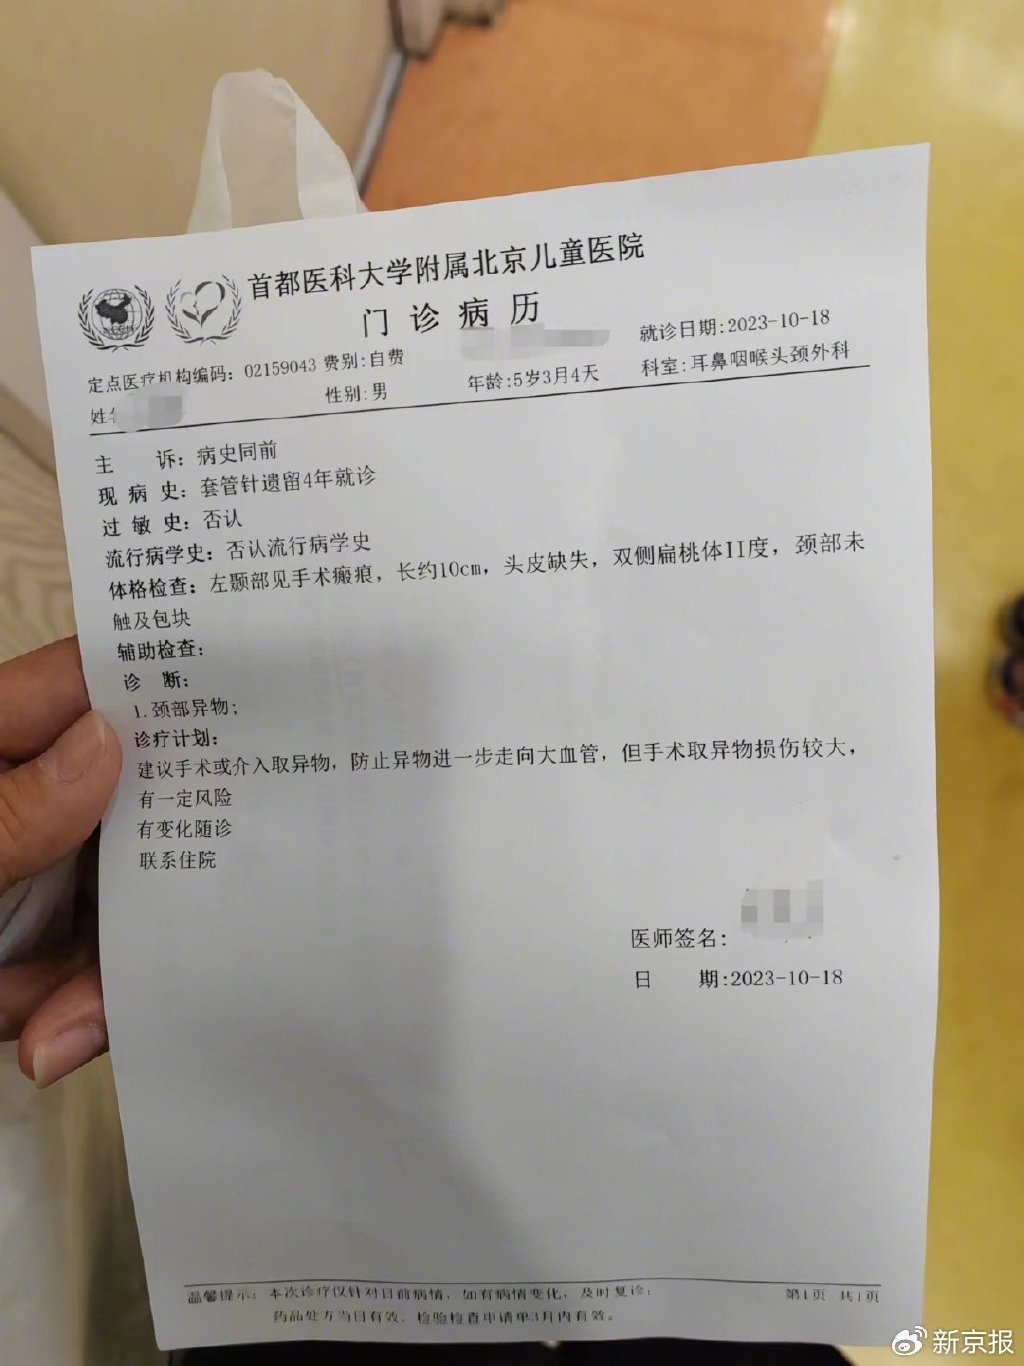 北京儿童医院门诊病历显示,目前手术取异物损伤较大